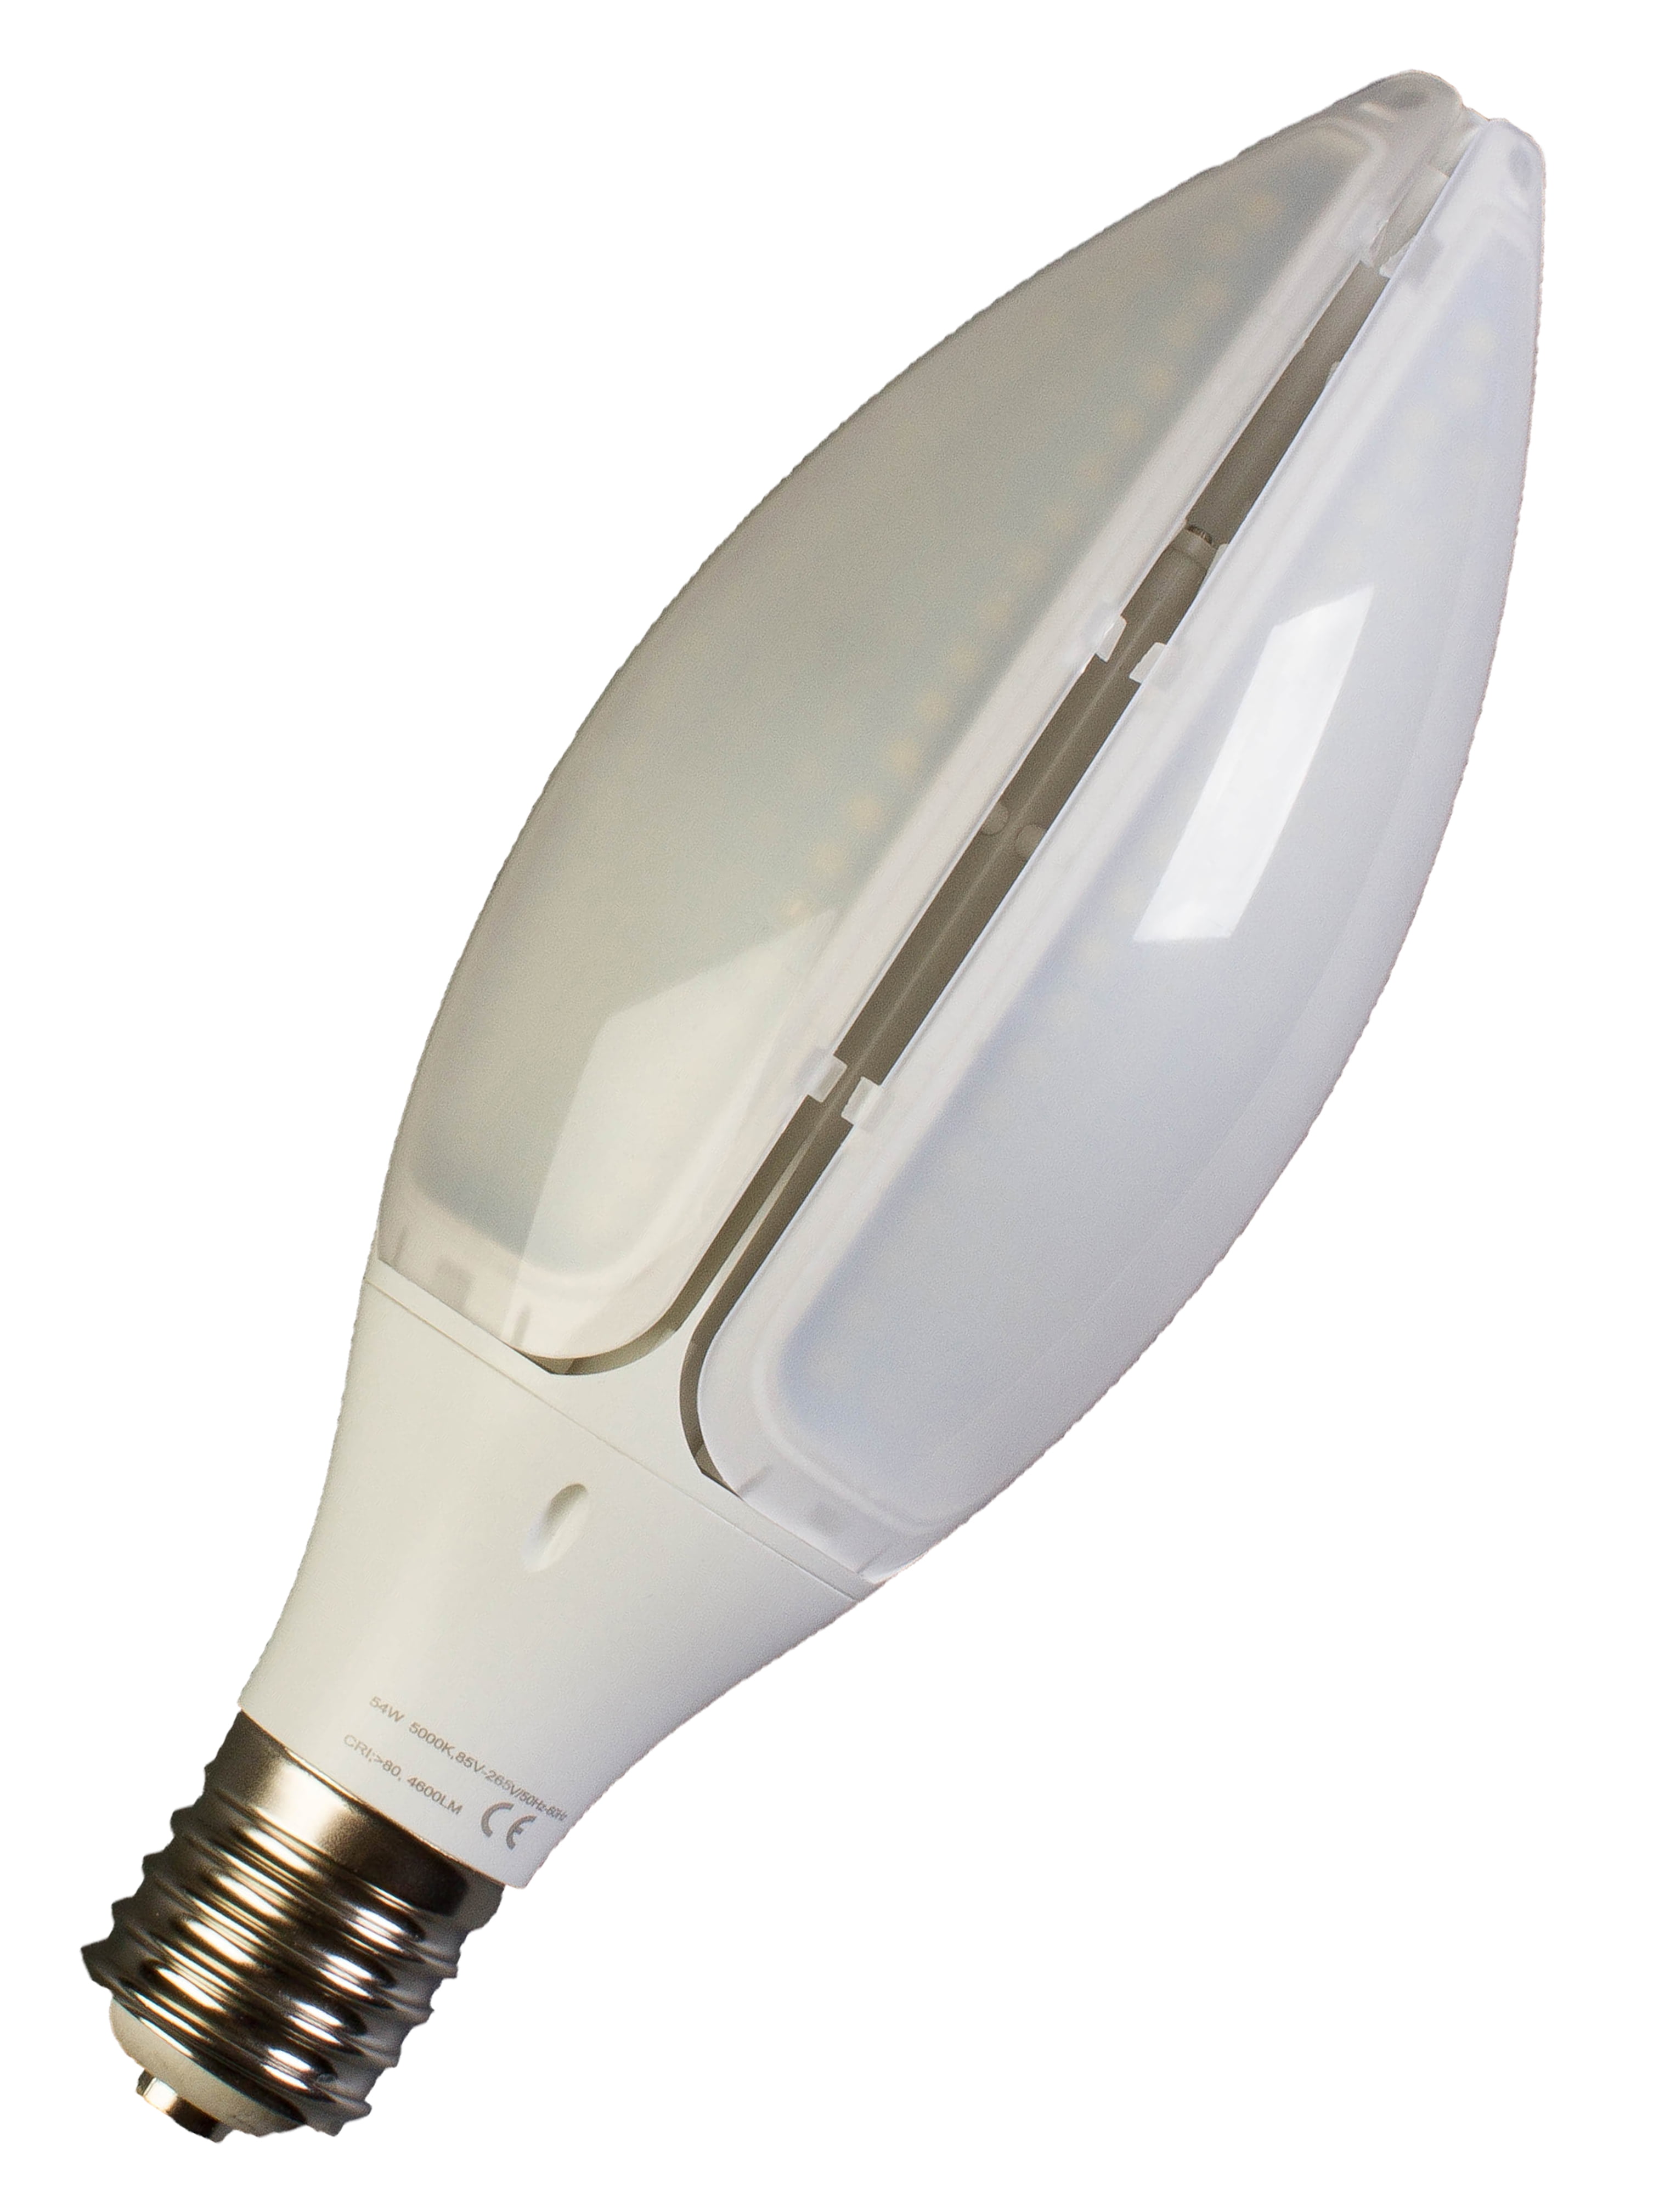 Details about   LED Corn Light Bulb 40W 60W 75W 100W 200W 300W Eq Warm Cool Daylight E26 